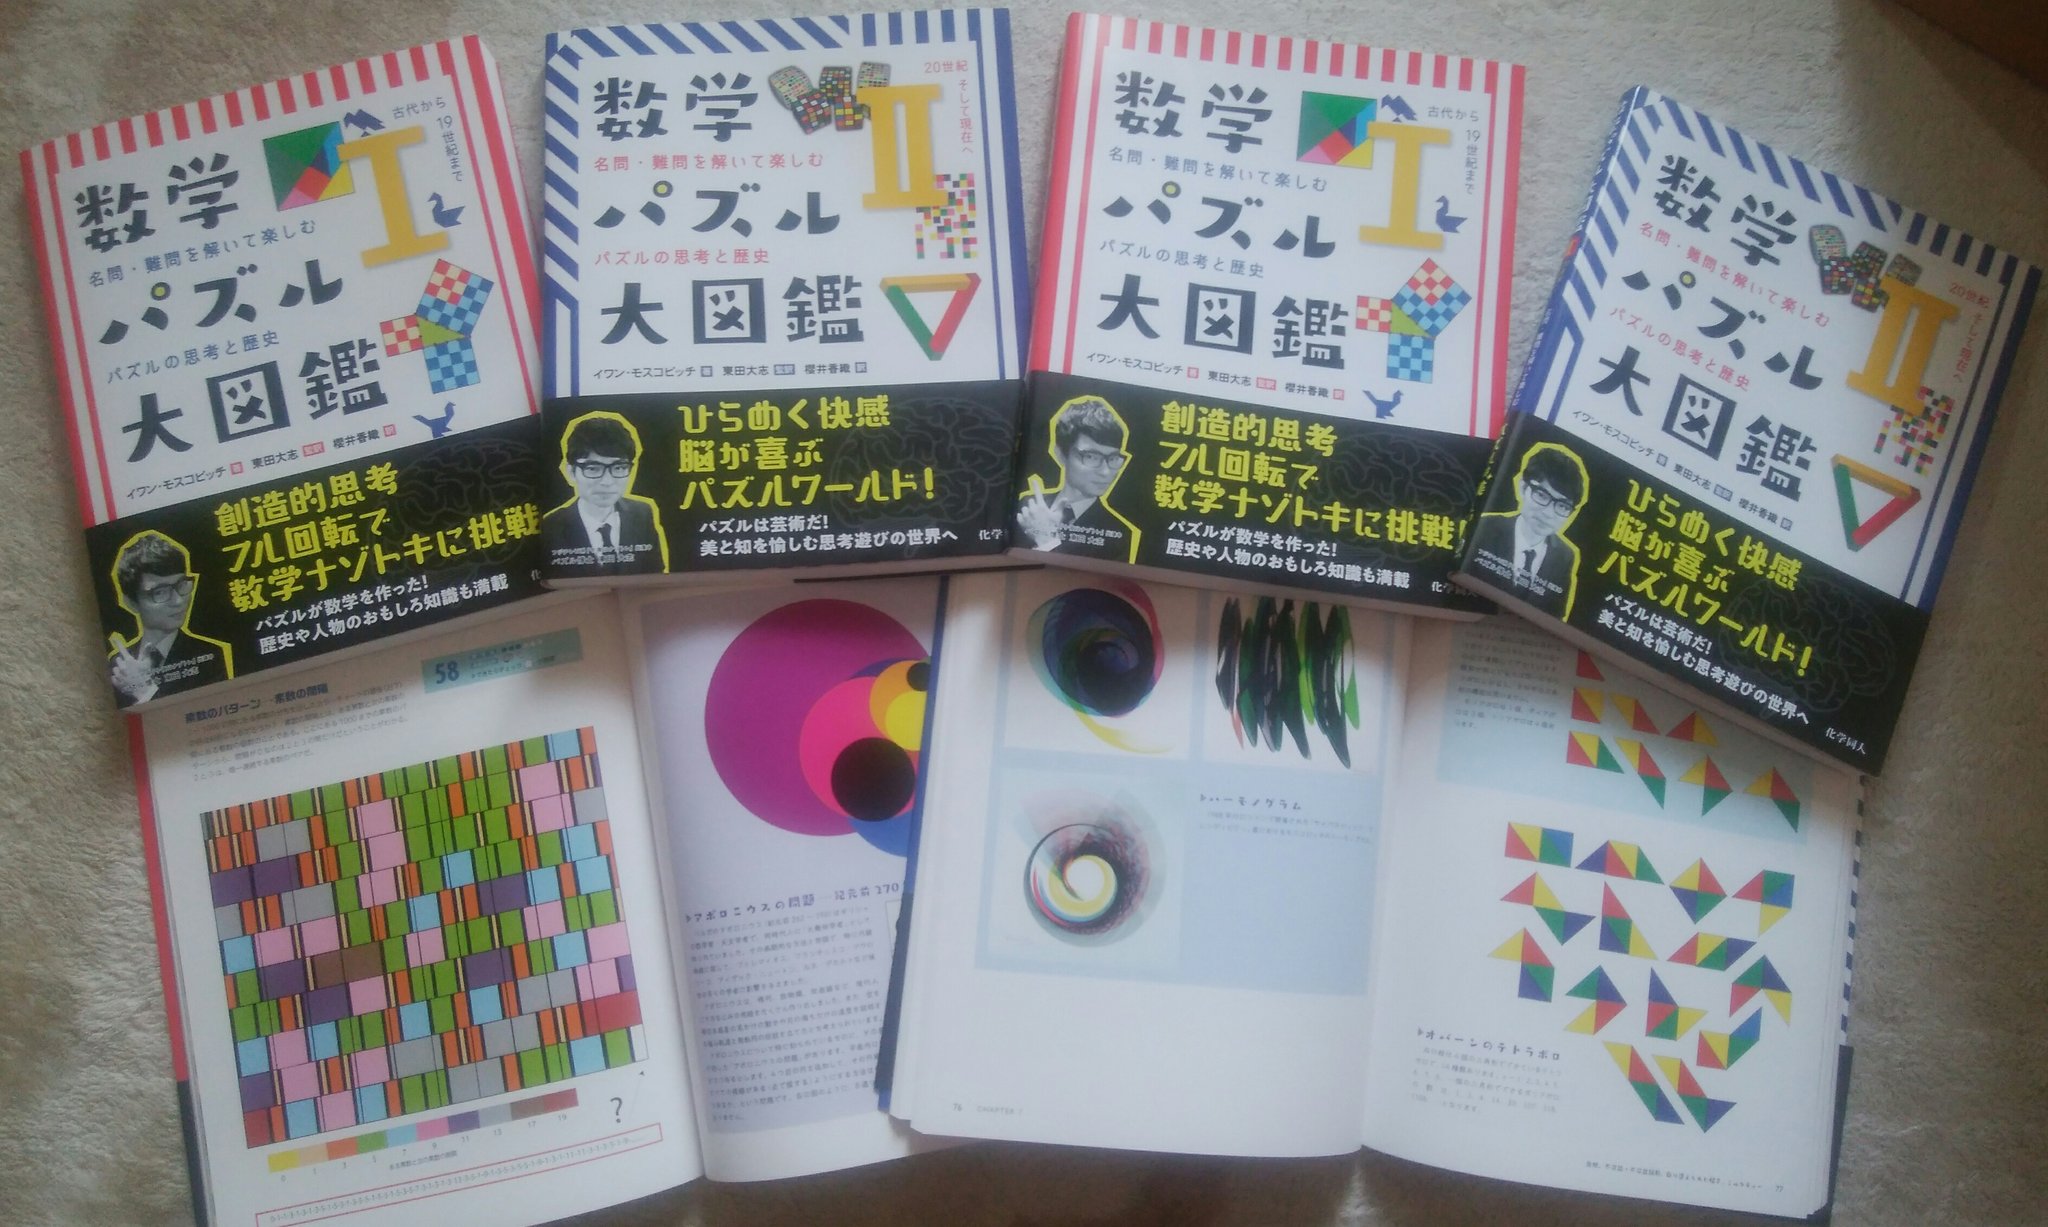 東田大志 ビラがパズルの人 チェバ 数学パズル 大図鑑 の見本が届きました 本当にきれいなカラー刷りで 眺めるだけでも楽しい本に仕上がっています この本を通して少しでも多くの人に数学パズルの魅力が伝わって欲しいと願います T Co